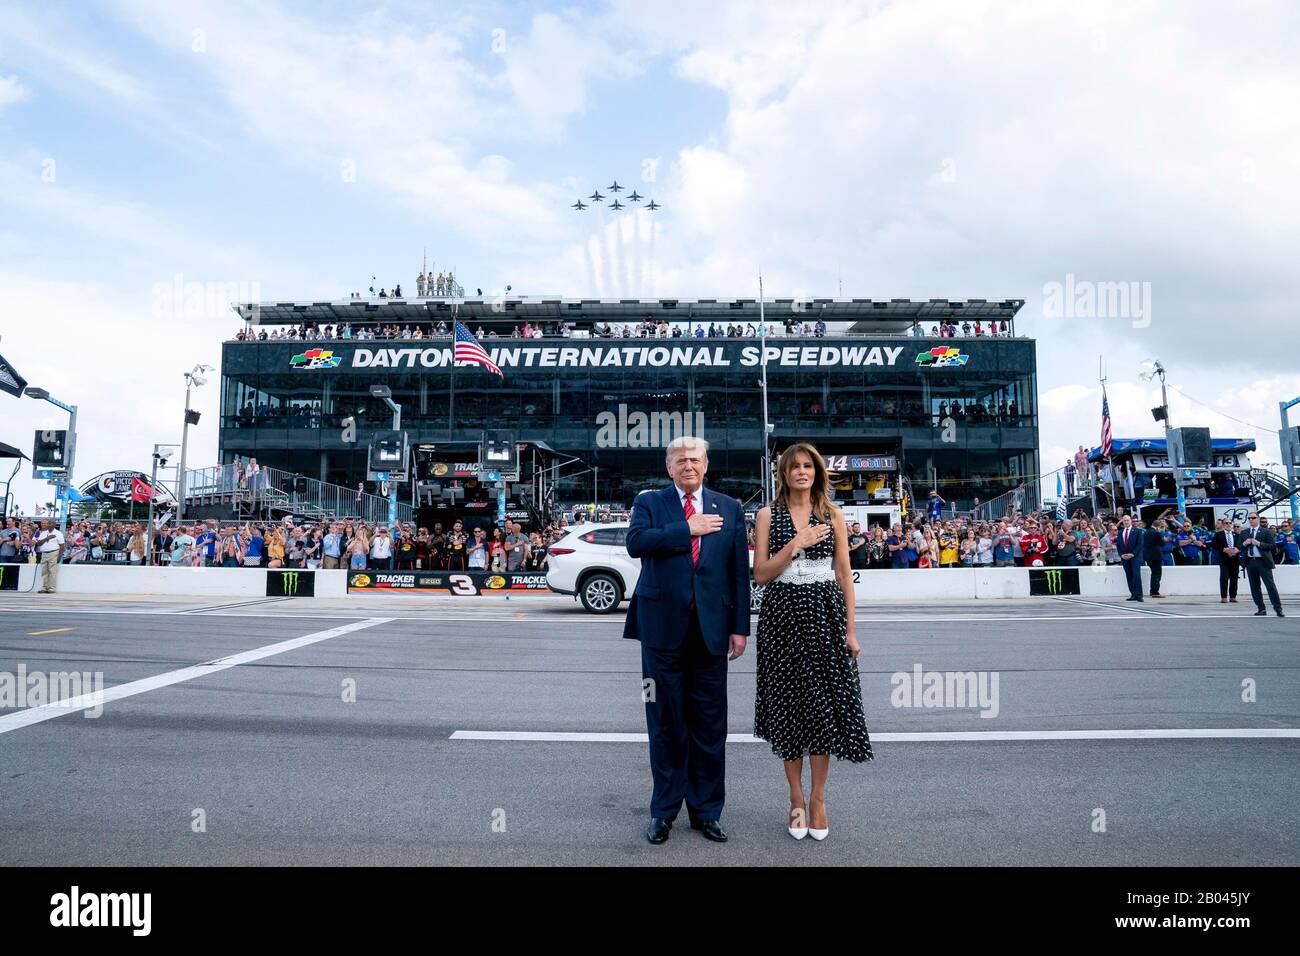 El presidente estadounidense Donald Trump y La Primera Dama Melania Trump, representan el himno nacional en Daytona International Speedway el 16 de febrero de 2020 en Daytona Beach, Florida. Trump sirvió como el comienzo oficial de la carrera automovilística NASCAR Daytona 500 y tomó un paseo en la limusina presidencial alrededor de la pista. Foto de stock